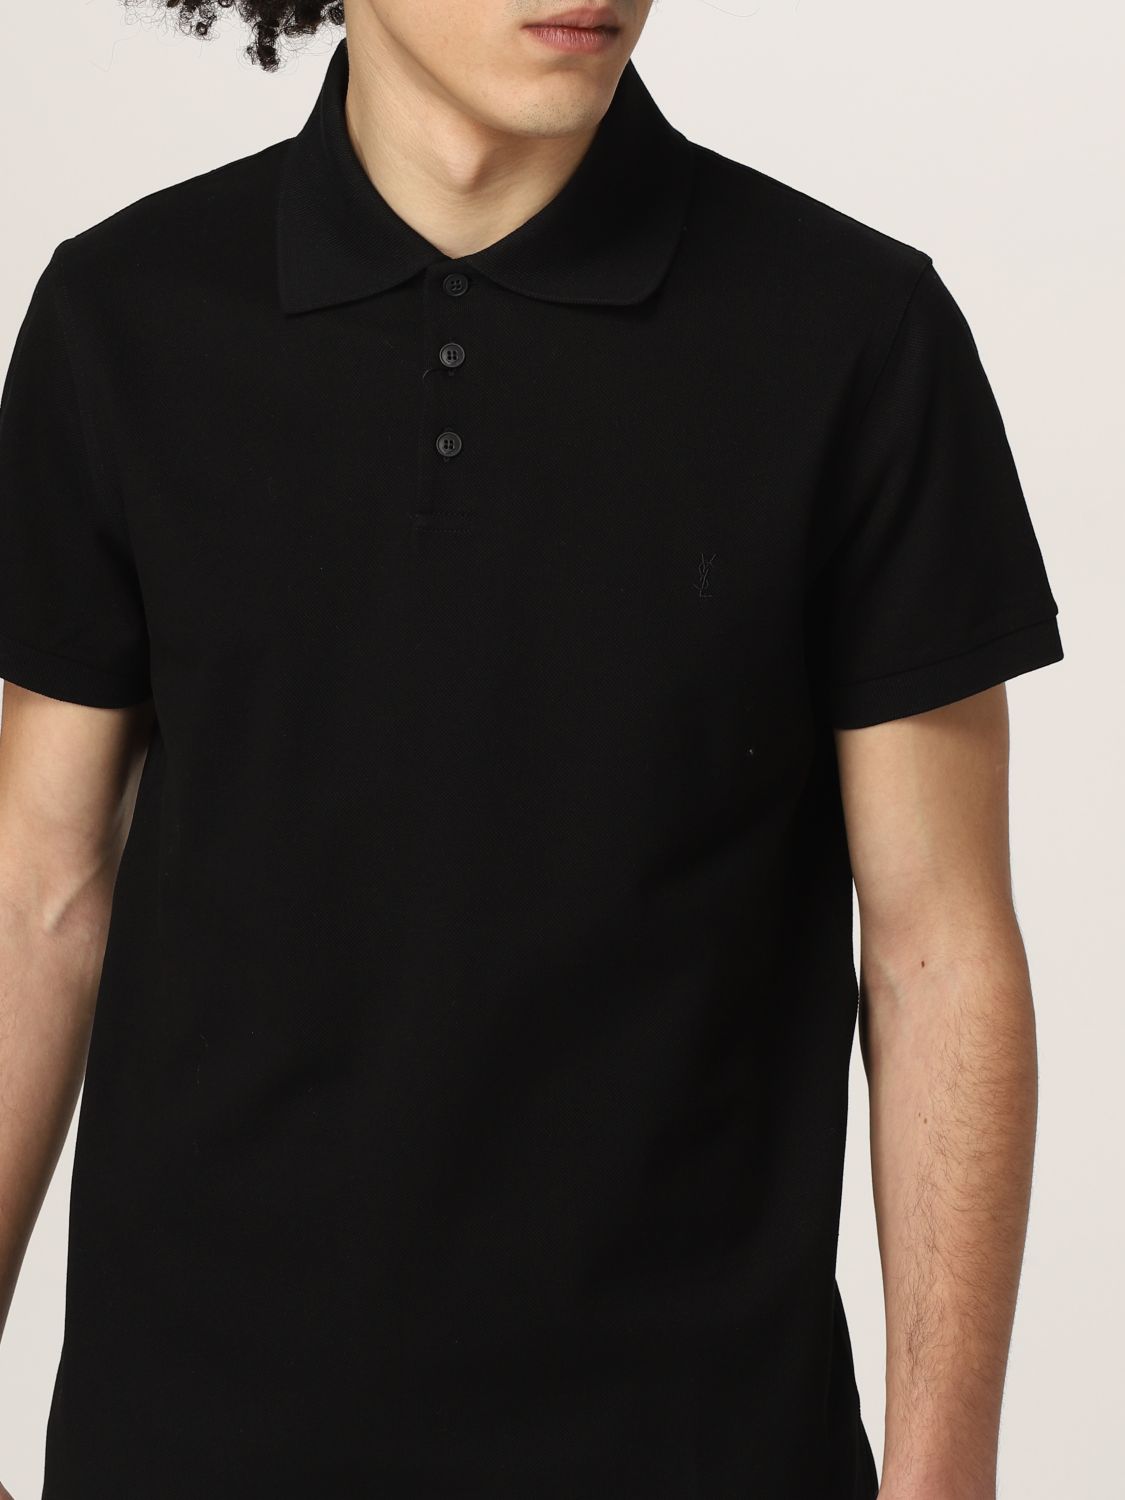 ポロシャツ サンローラン: ポロシャツ Saint Laurent メンズ ブラック 5